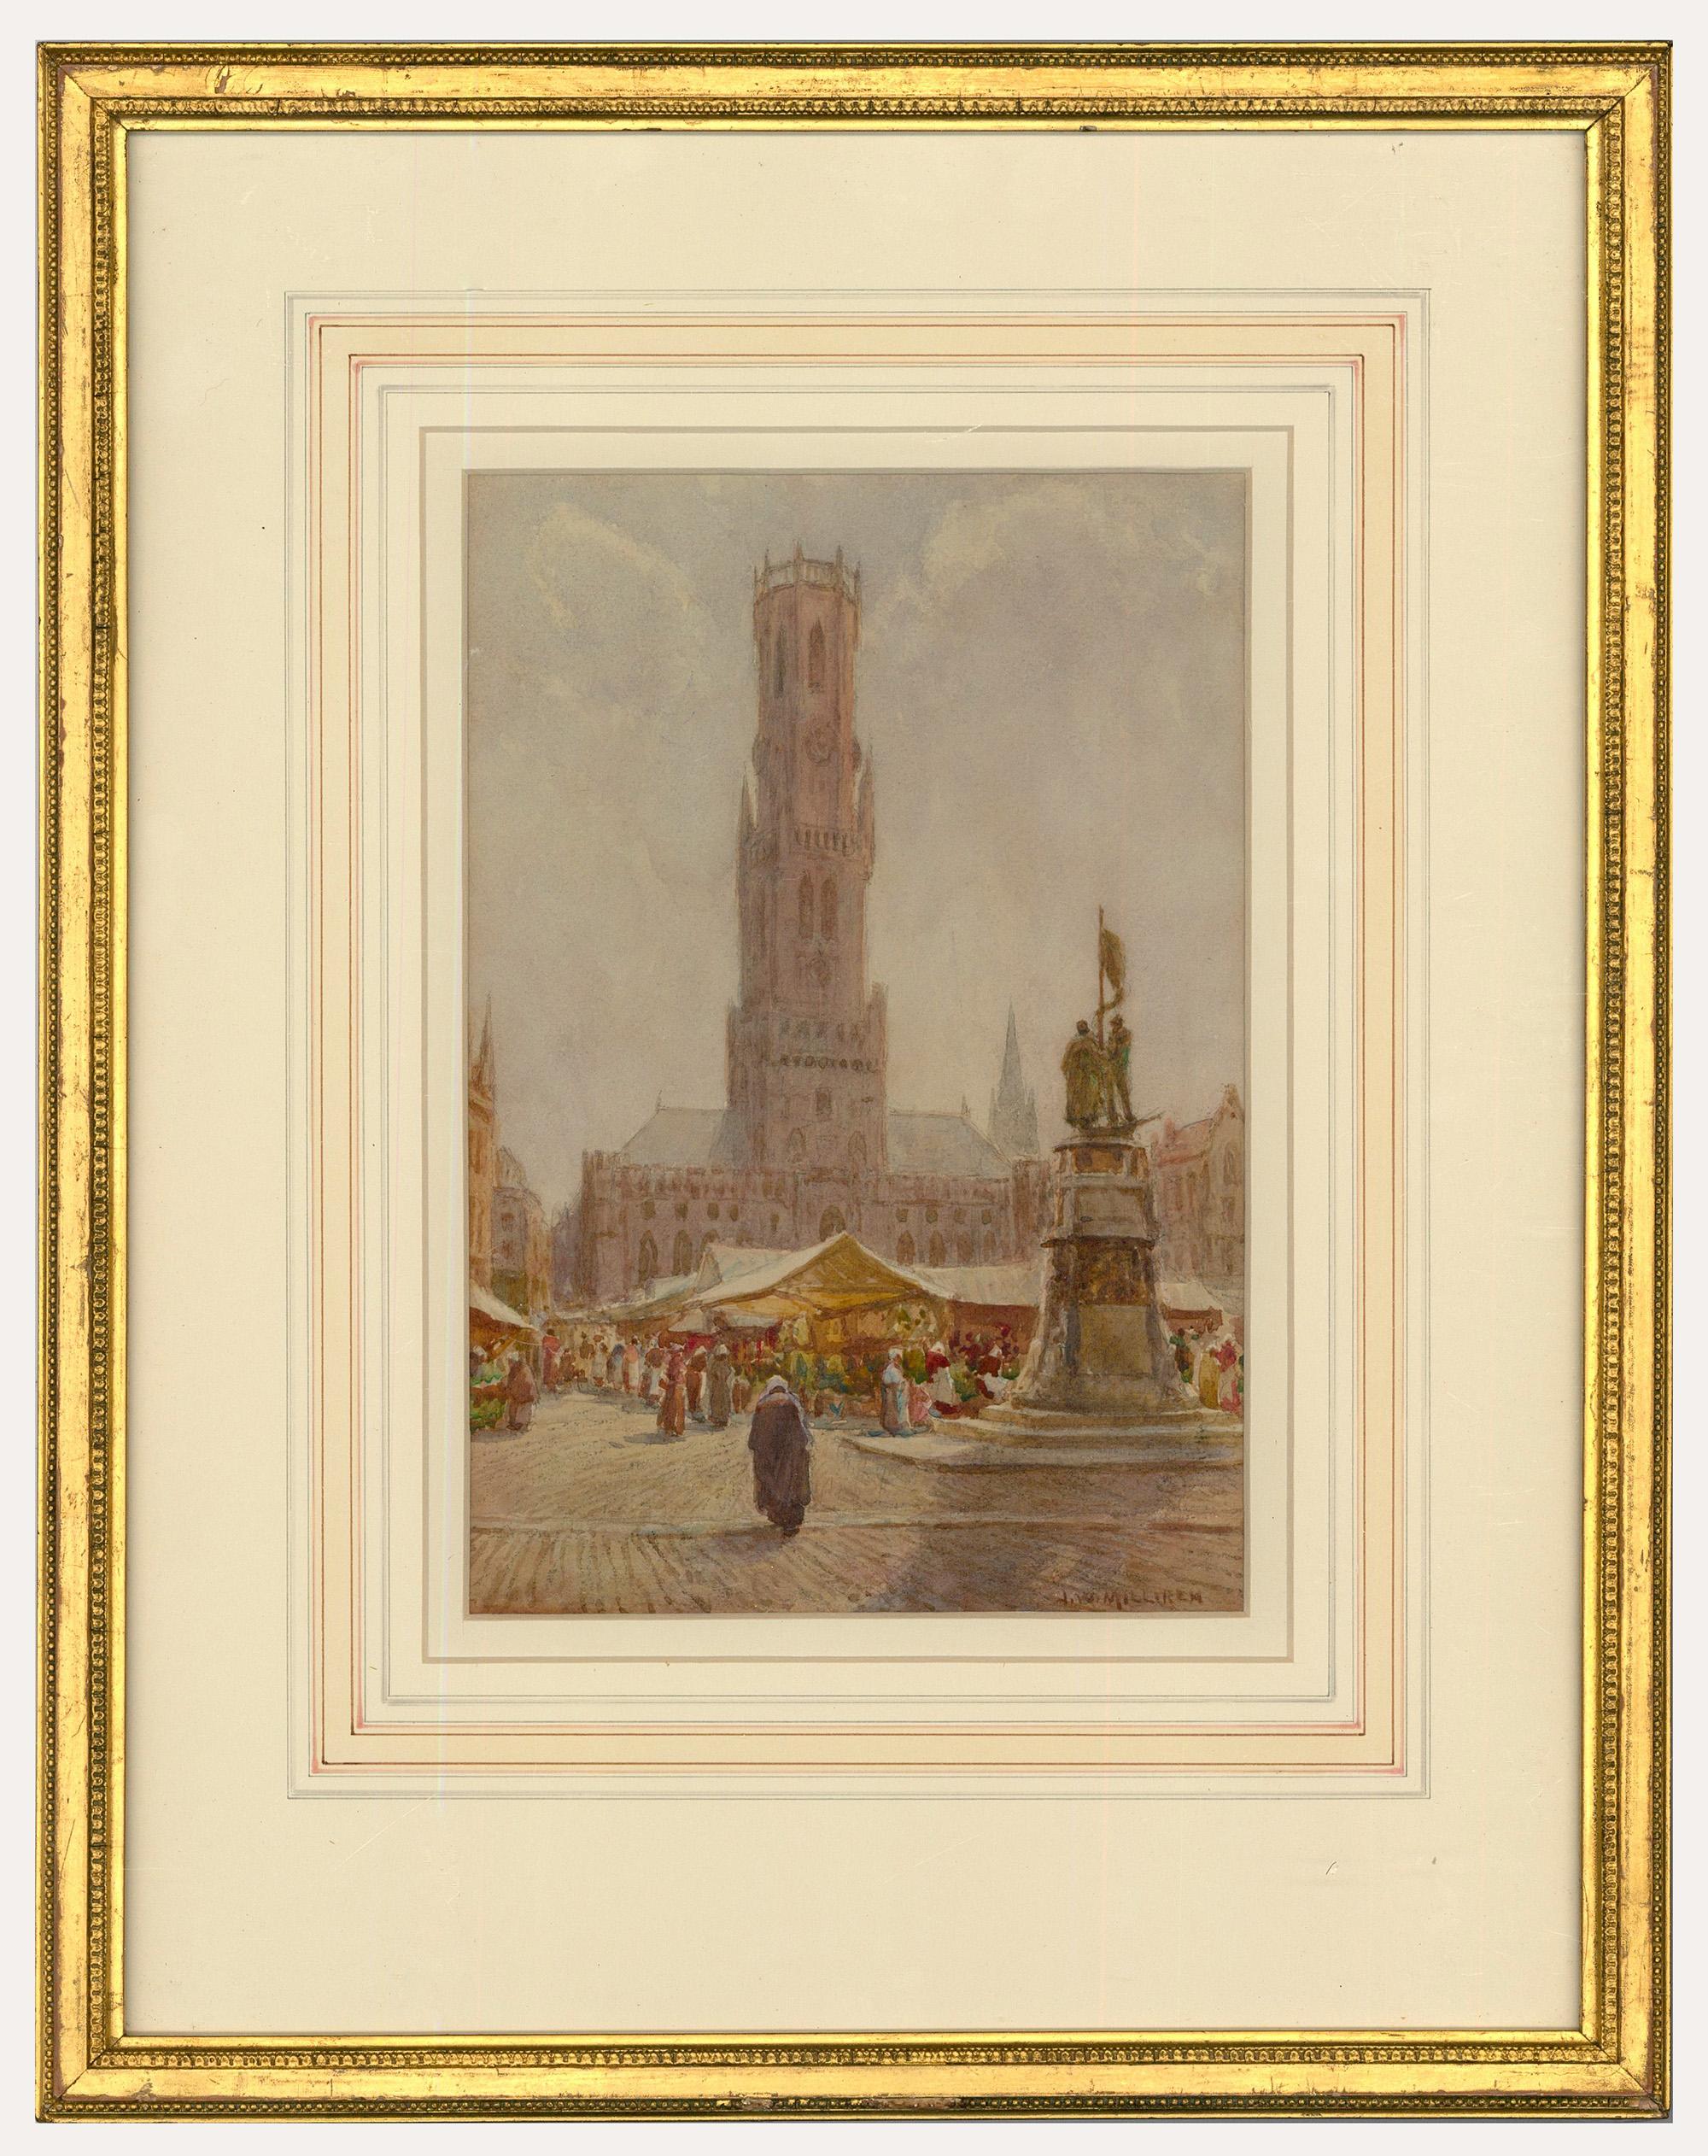 Unknown Landscape Art - Joseph W. Milliken (1865-1945) - Watercolour, The Grand Palace, Bruges